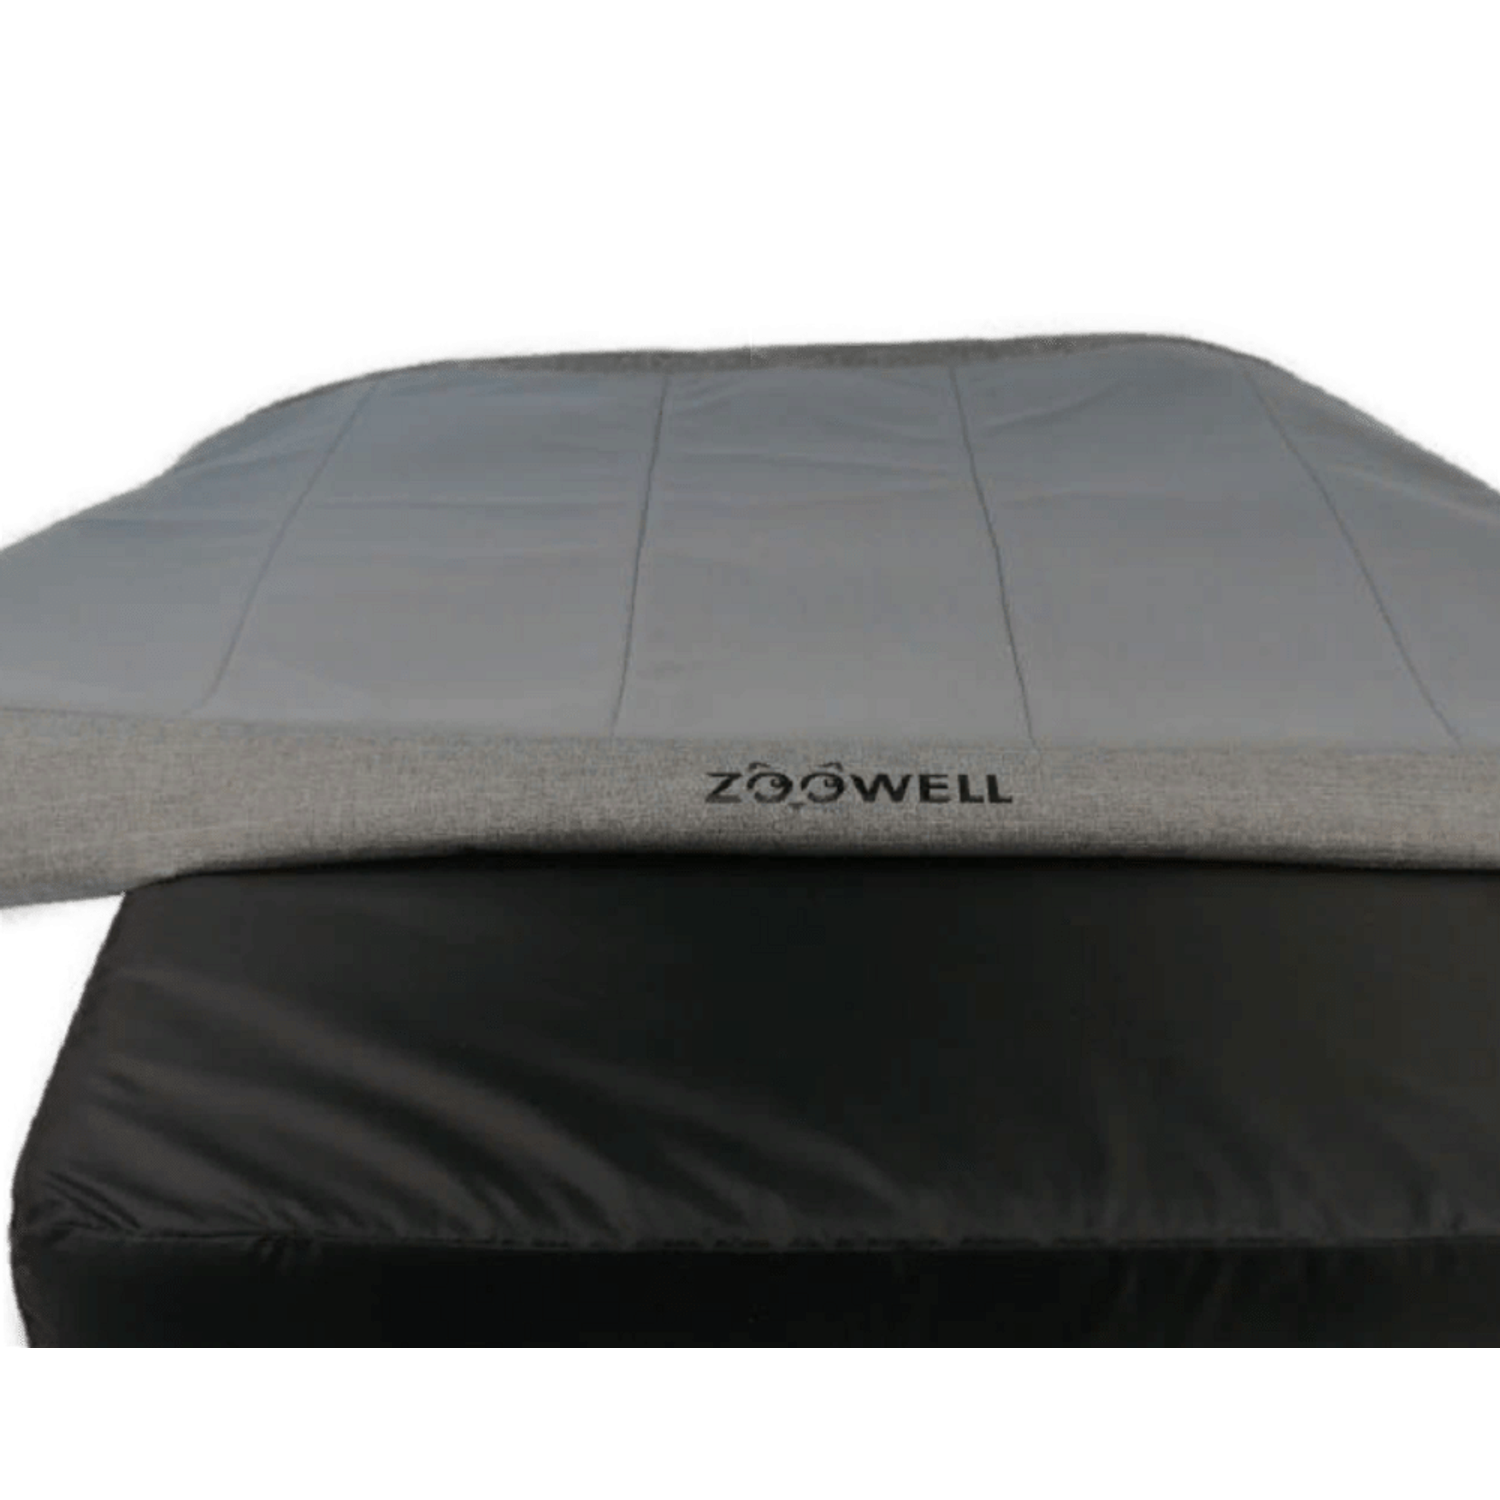 Лежанка для животных ZDK Zoowell Premium L Grey 89x56x10 см - фото 2